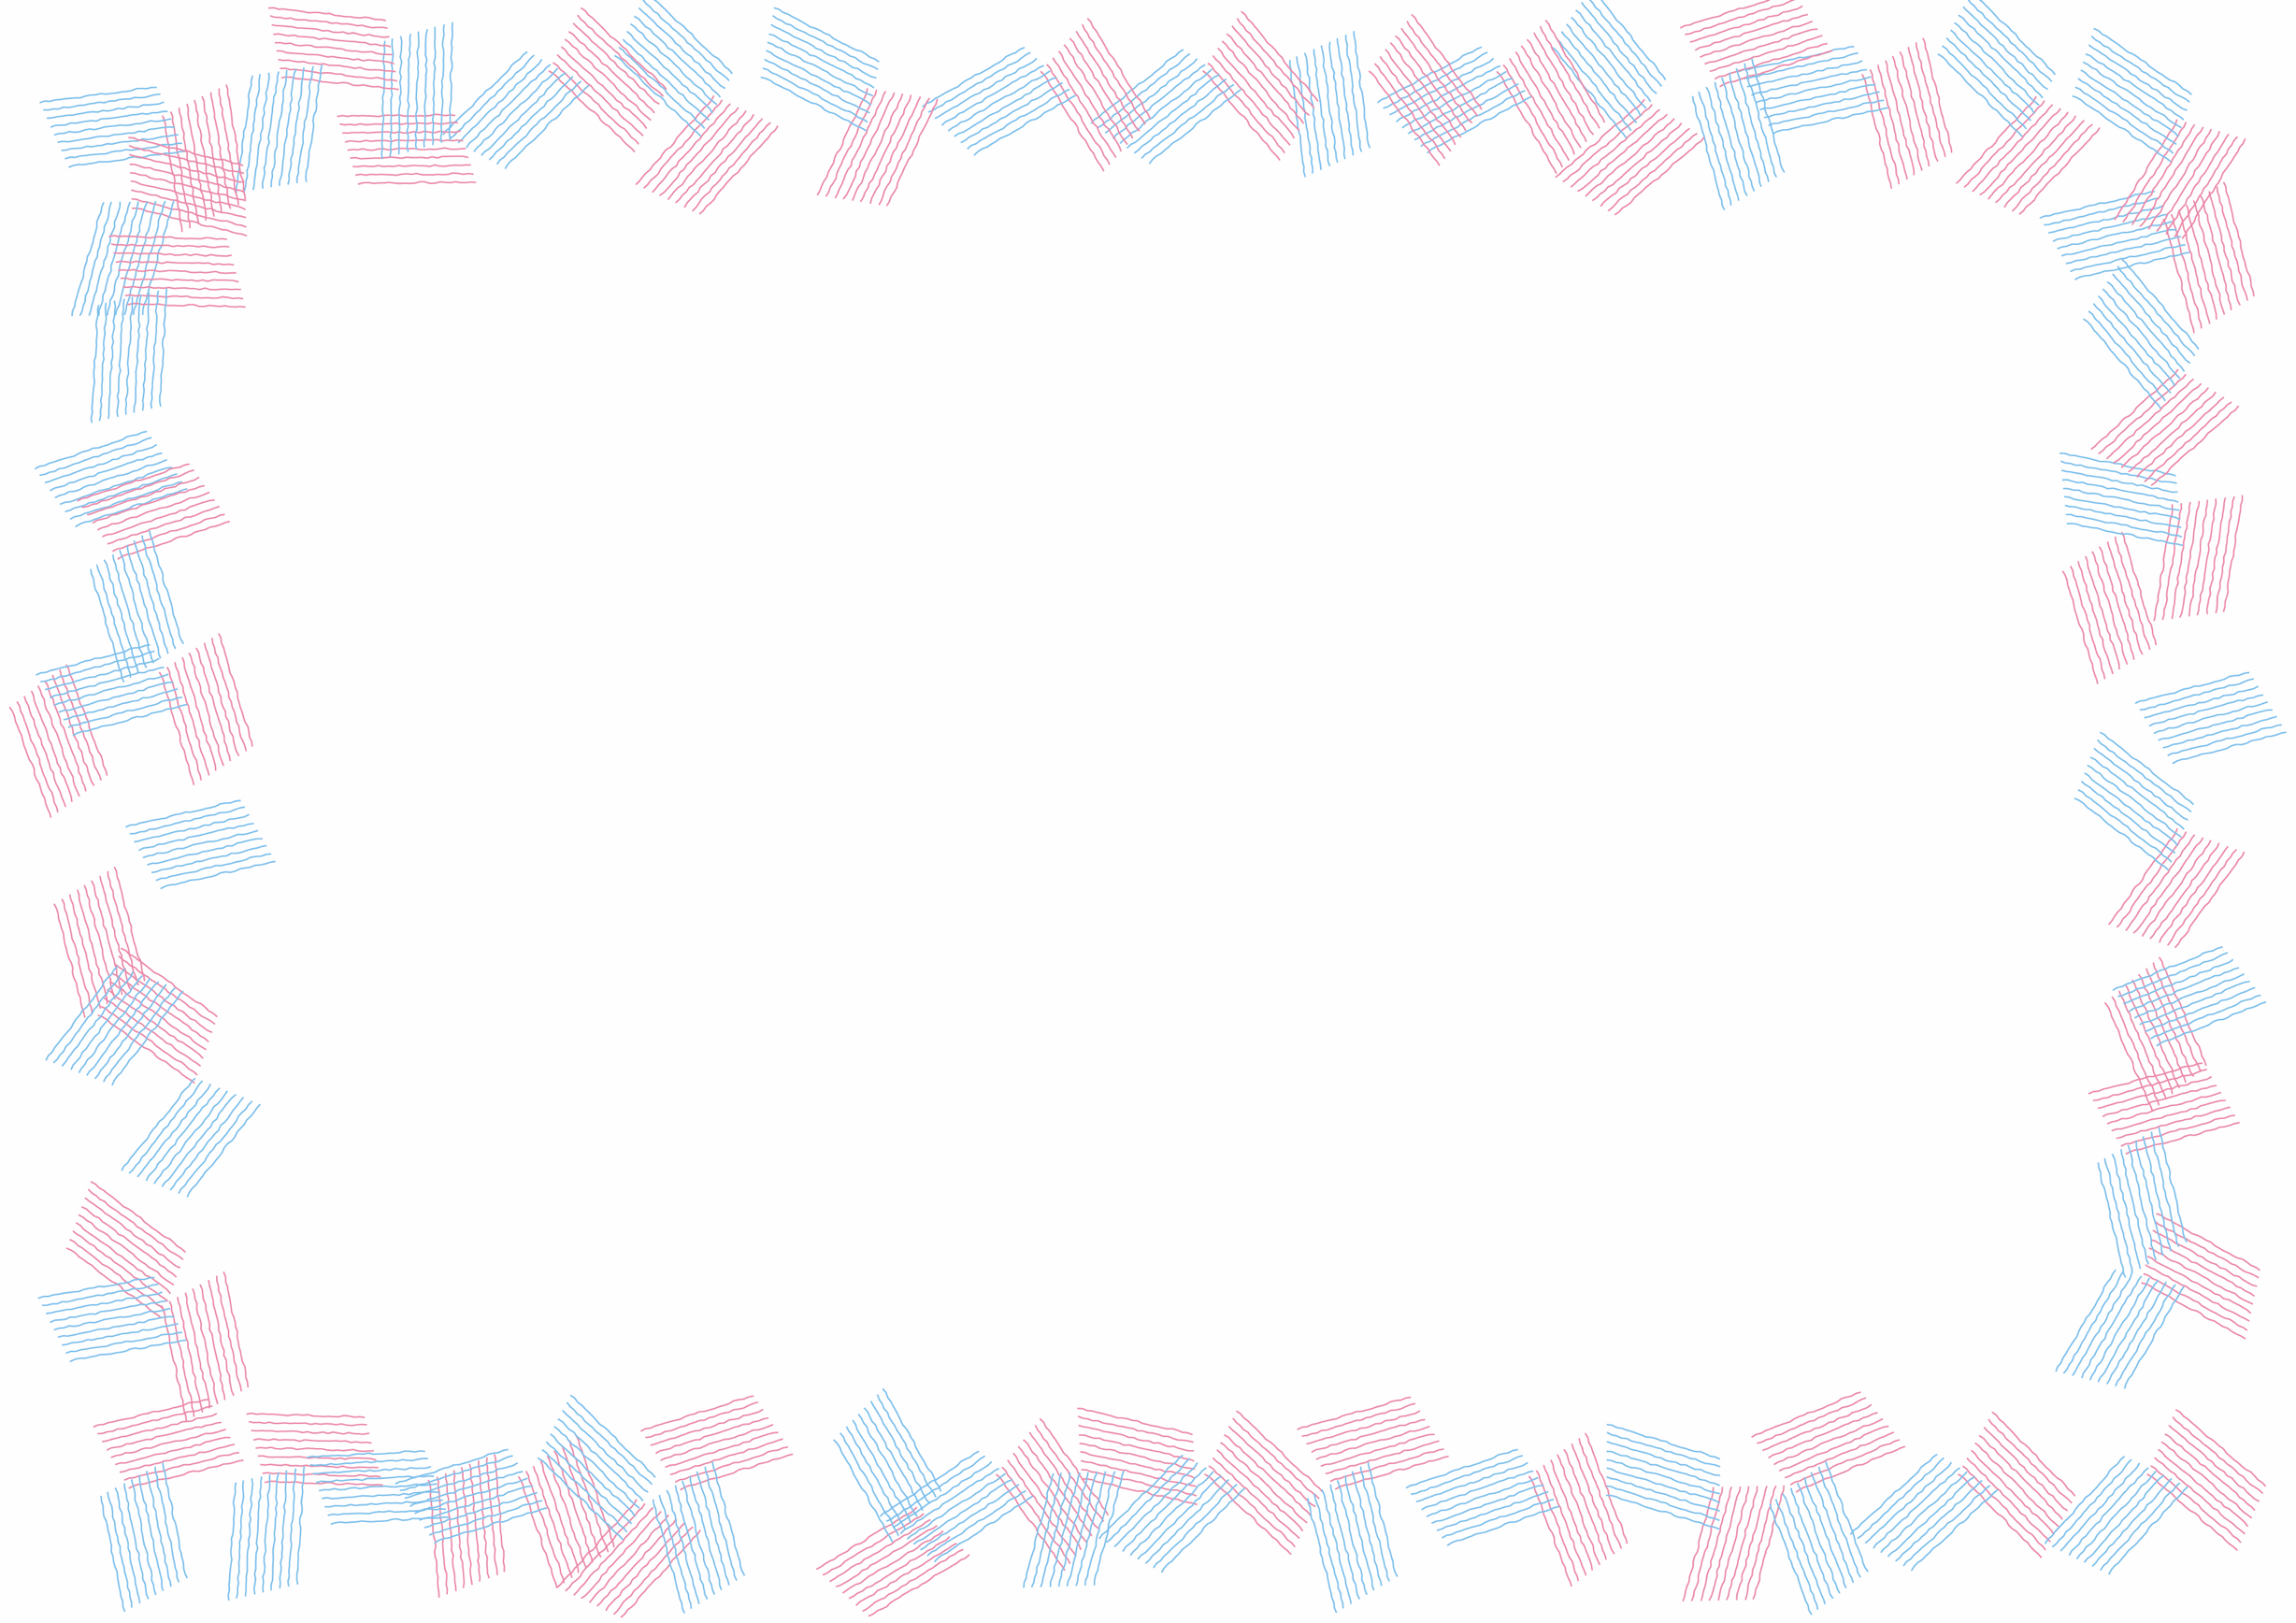 可愛いイラスト無料 背景 シンプル フレーム ピンク色 水色 Free Illustration Background Simple Frame Pink Light Blue イラストダウンロード